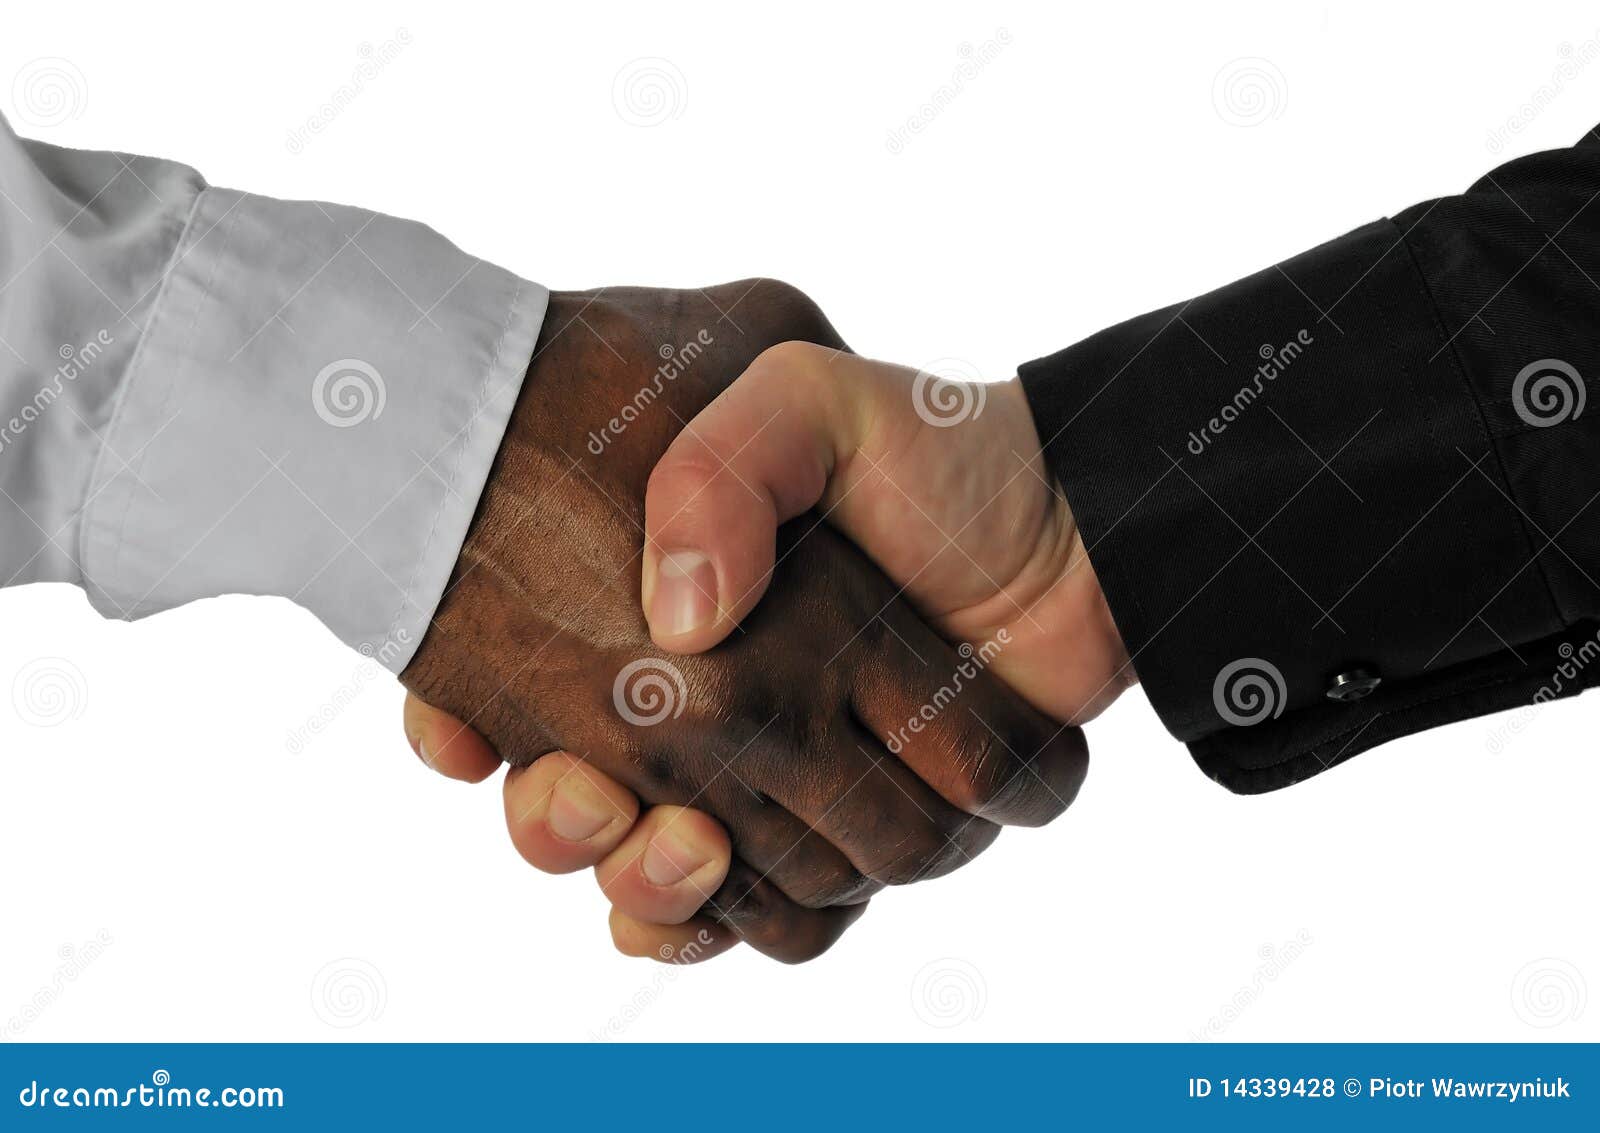 business hand shake